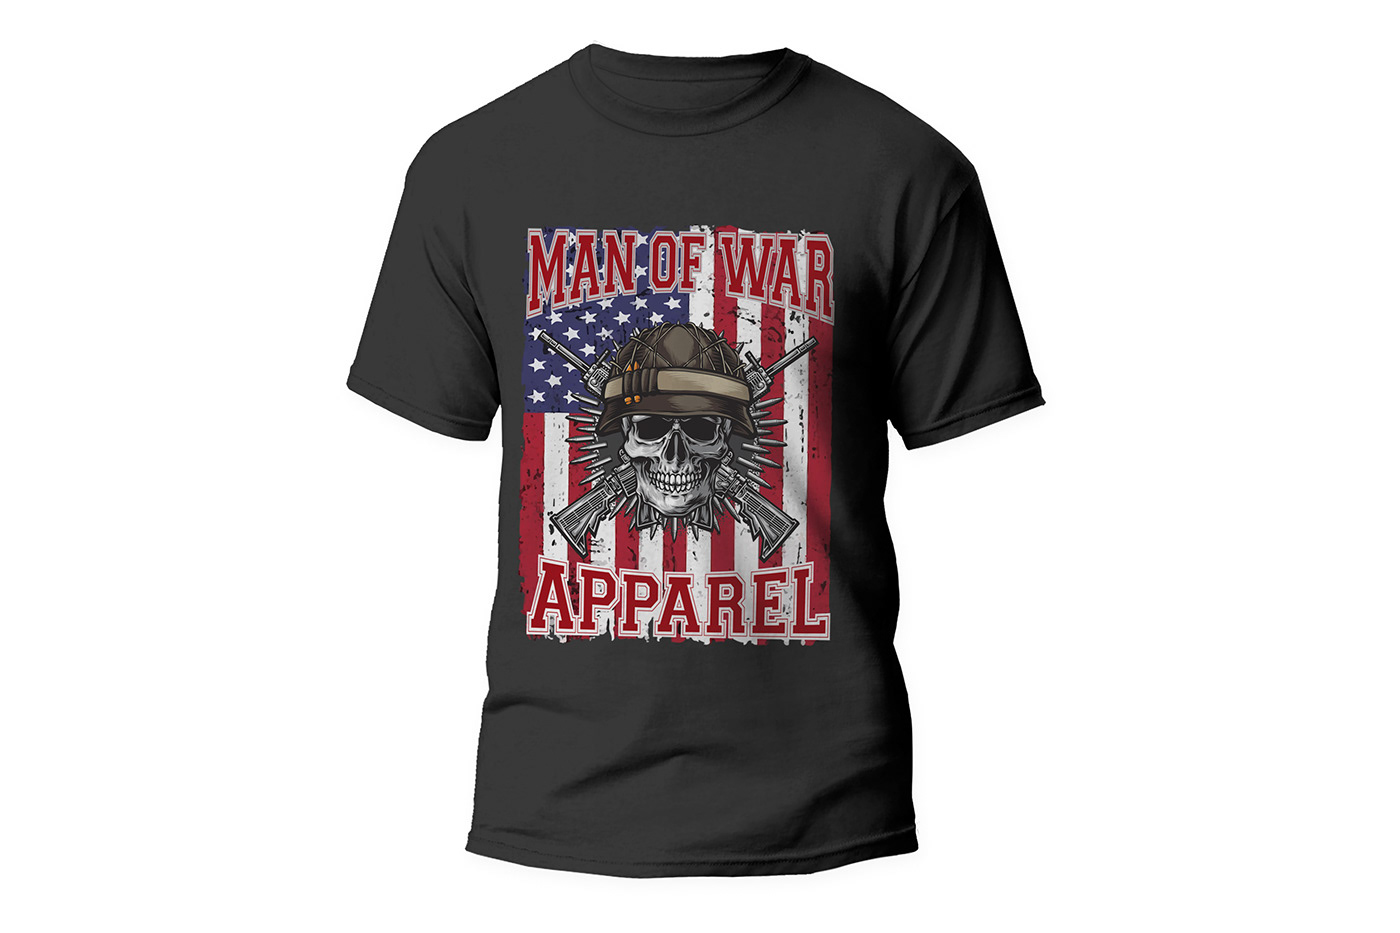 vintage t-shirt Tshirt Design american flag t-shirt american themed design Patriotic Shirts